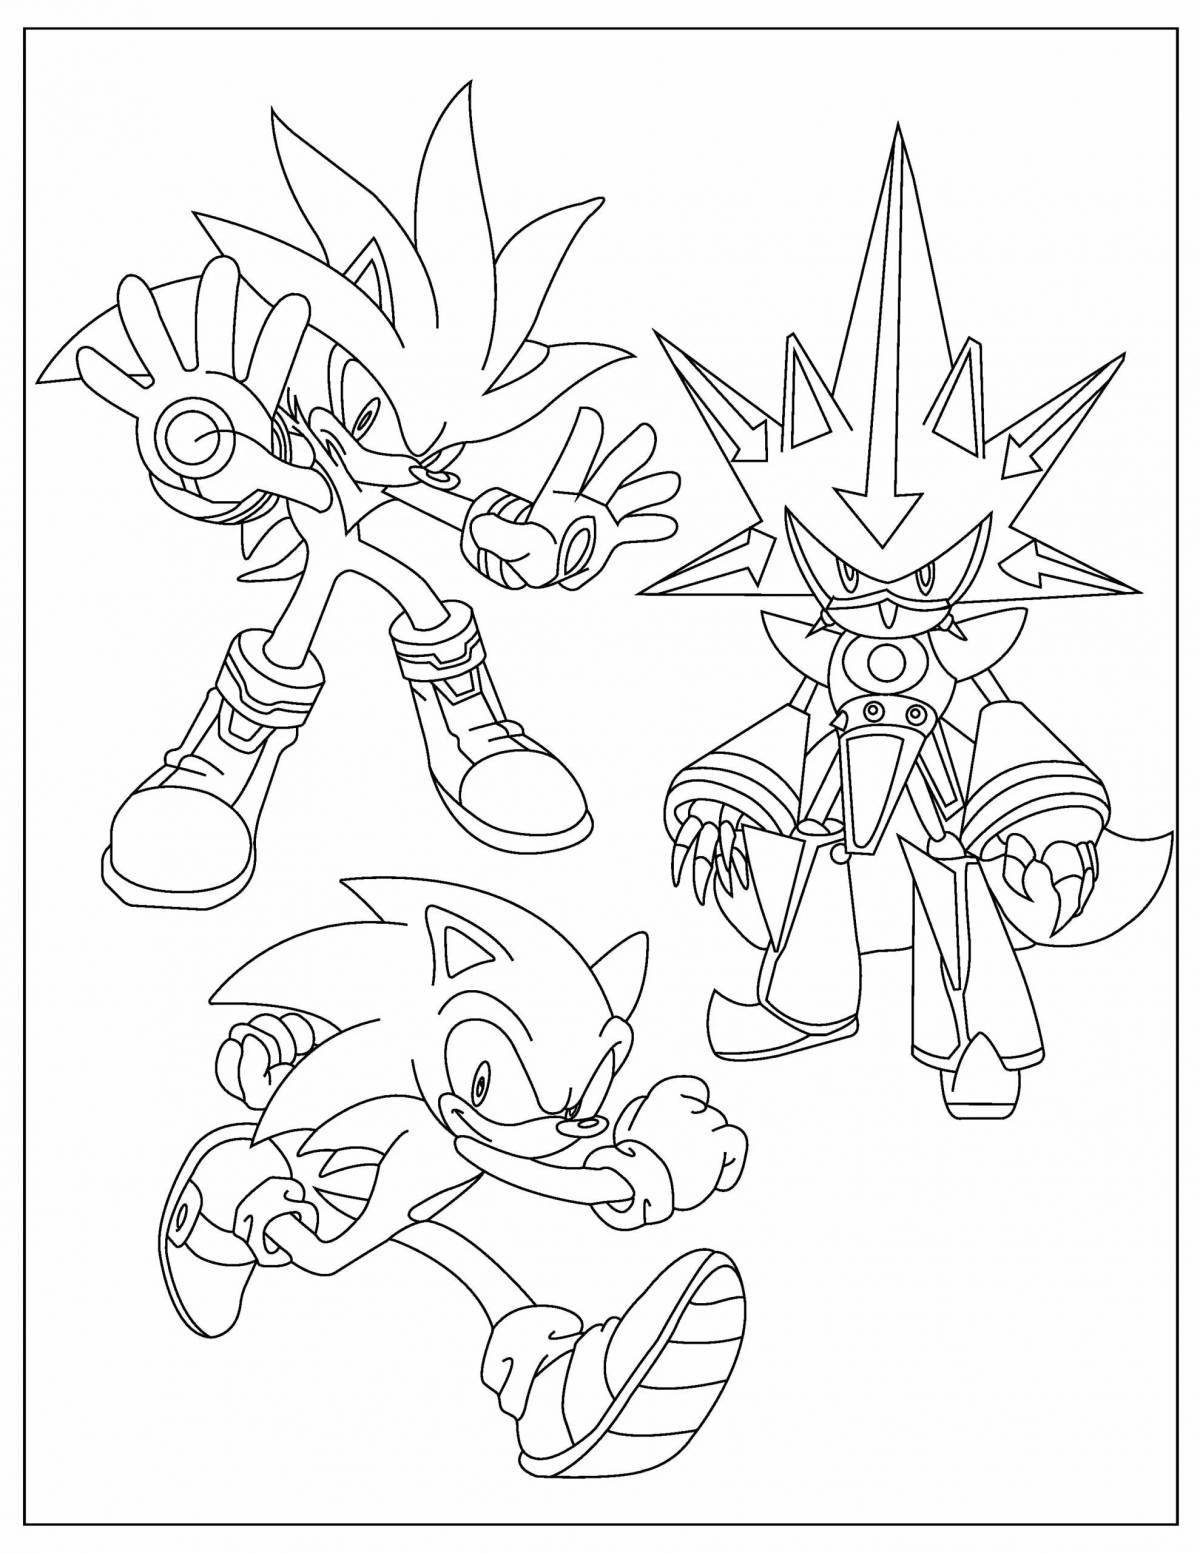 Sonic theos fantasy coloring book